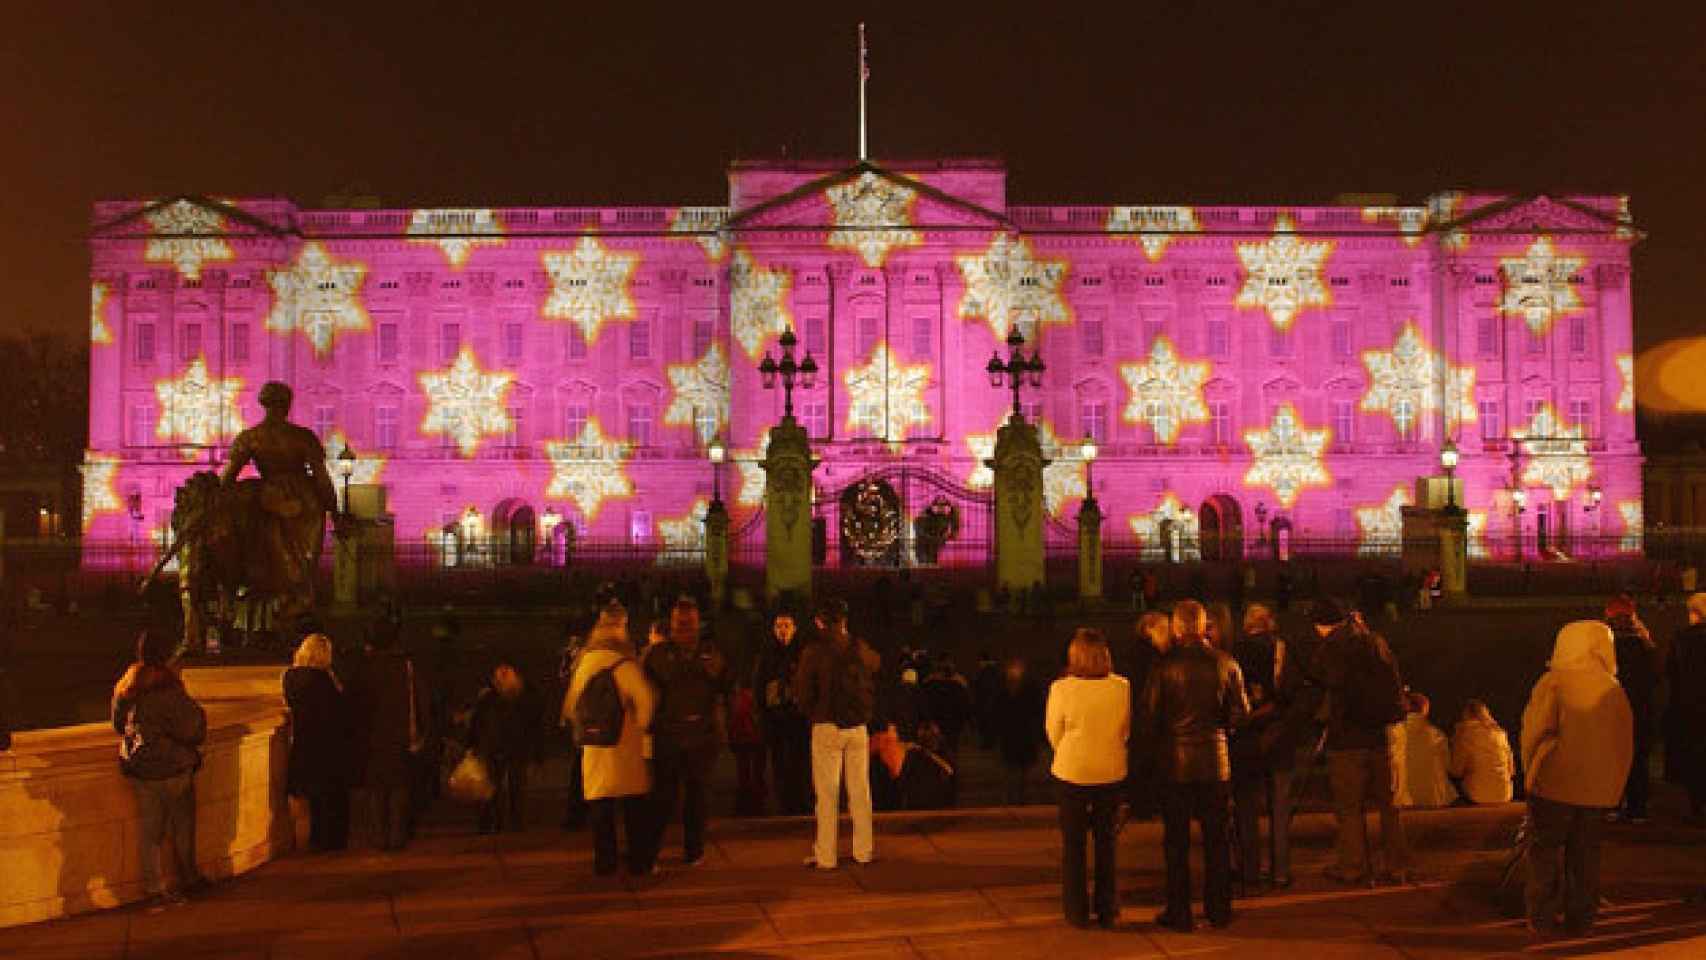 La fachada iluminada de Buckingham Palace el 31 de diciembre